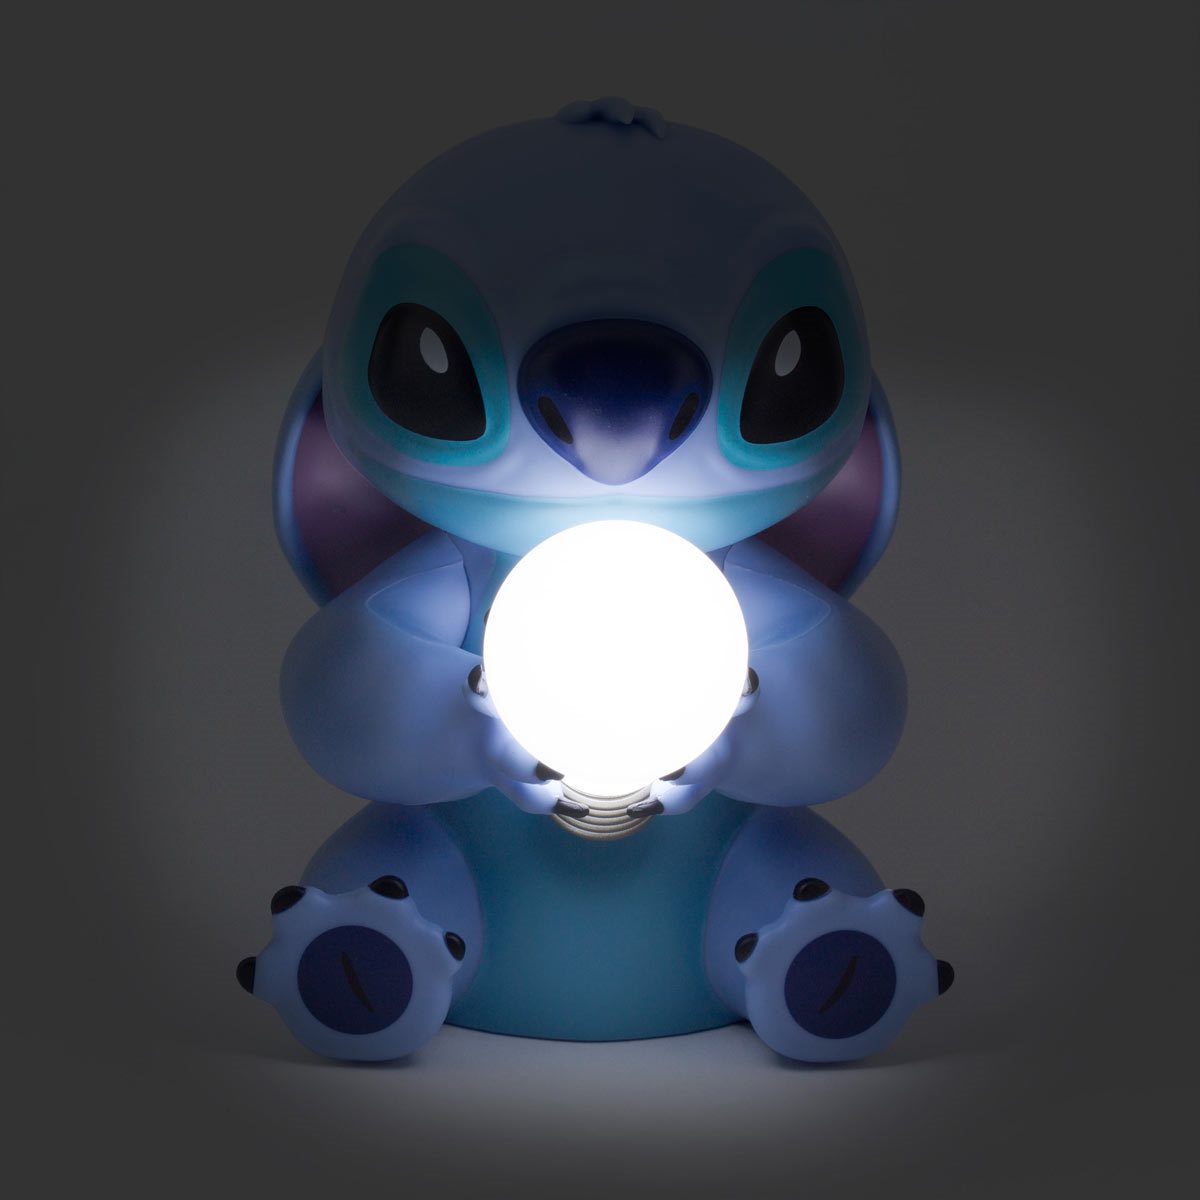 Disney Stitch Lamp (Includes LED Light Bulb)